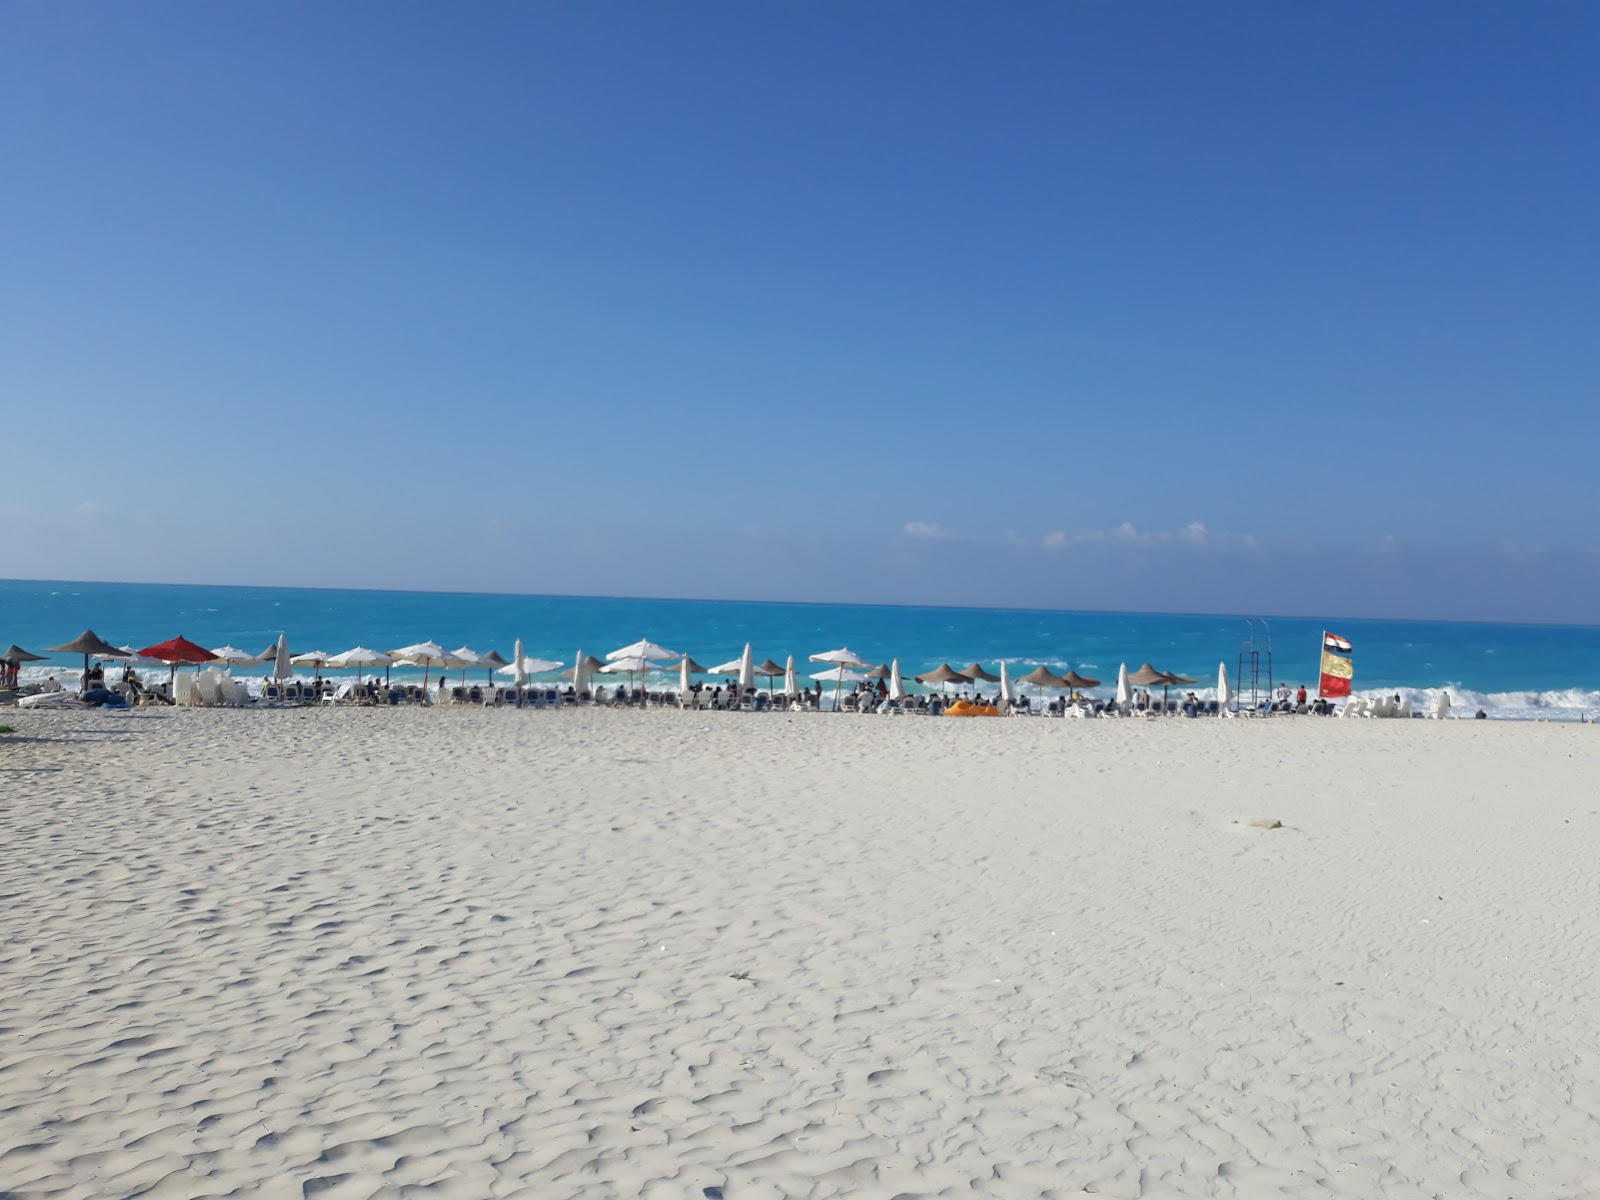 Foto de Assiut University Beach - lugar popular entre los conocedores del relax